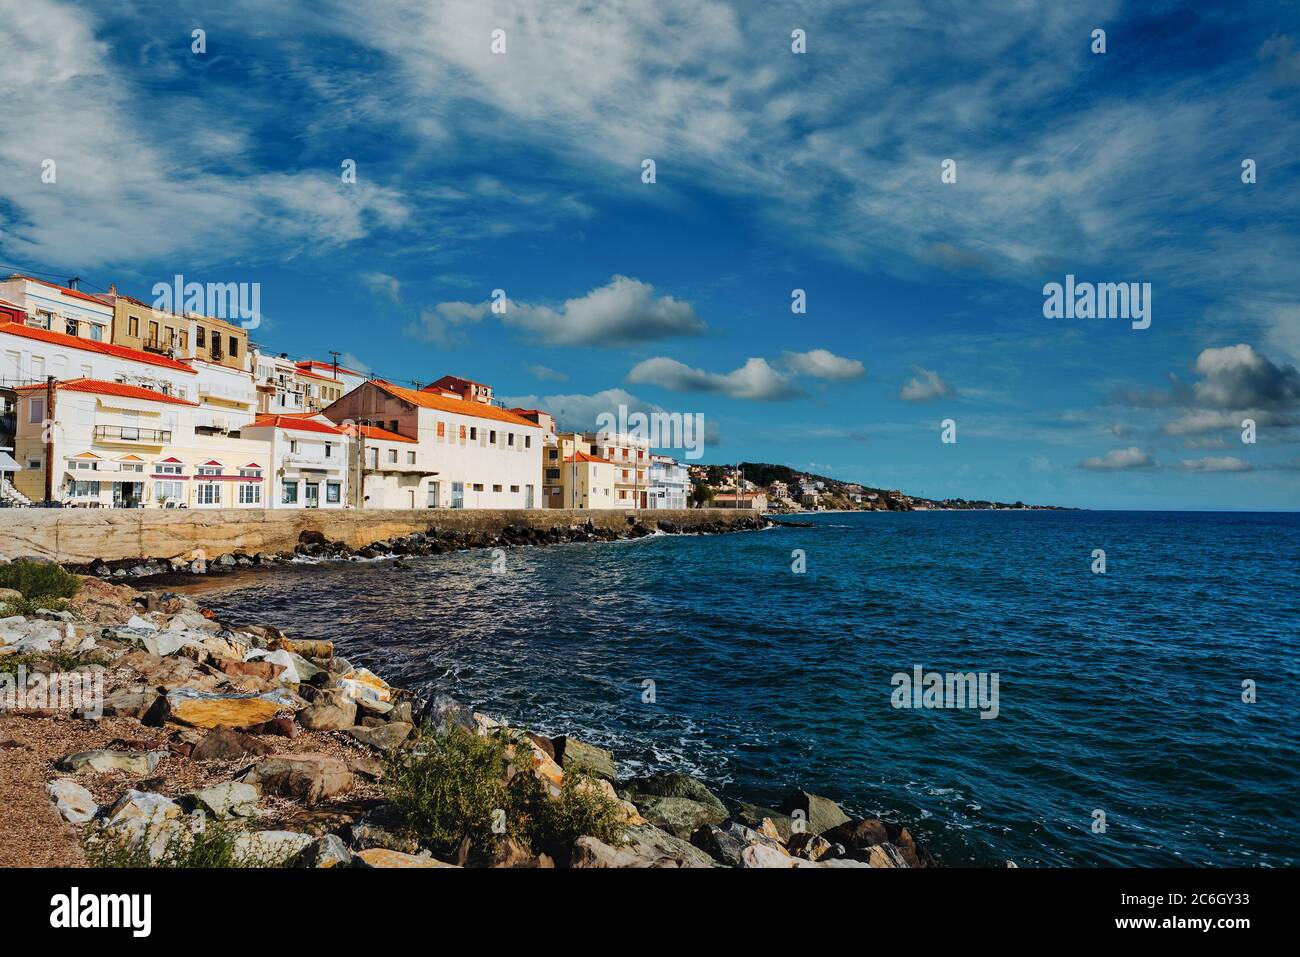 Pintoresco pueblo costero de Plomari (Plomarion) en la hermosa isla Lesvos (Lesbos) en Grecia. Foto de stock